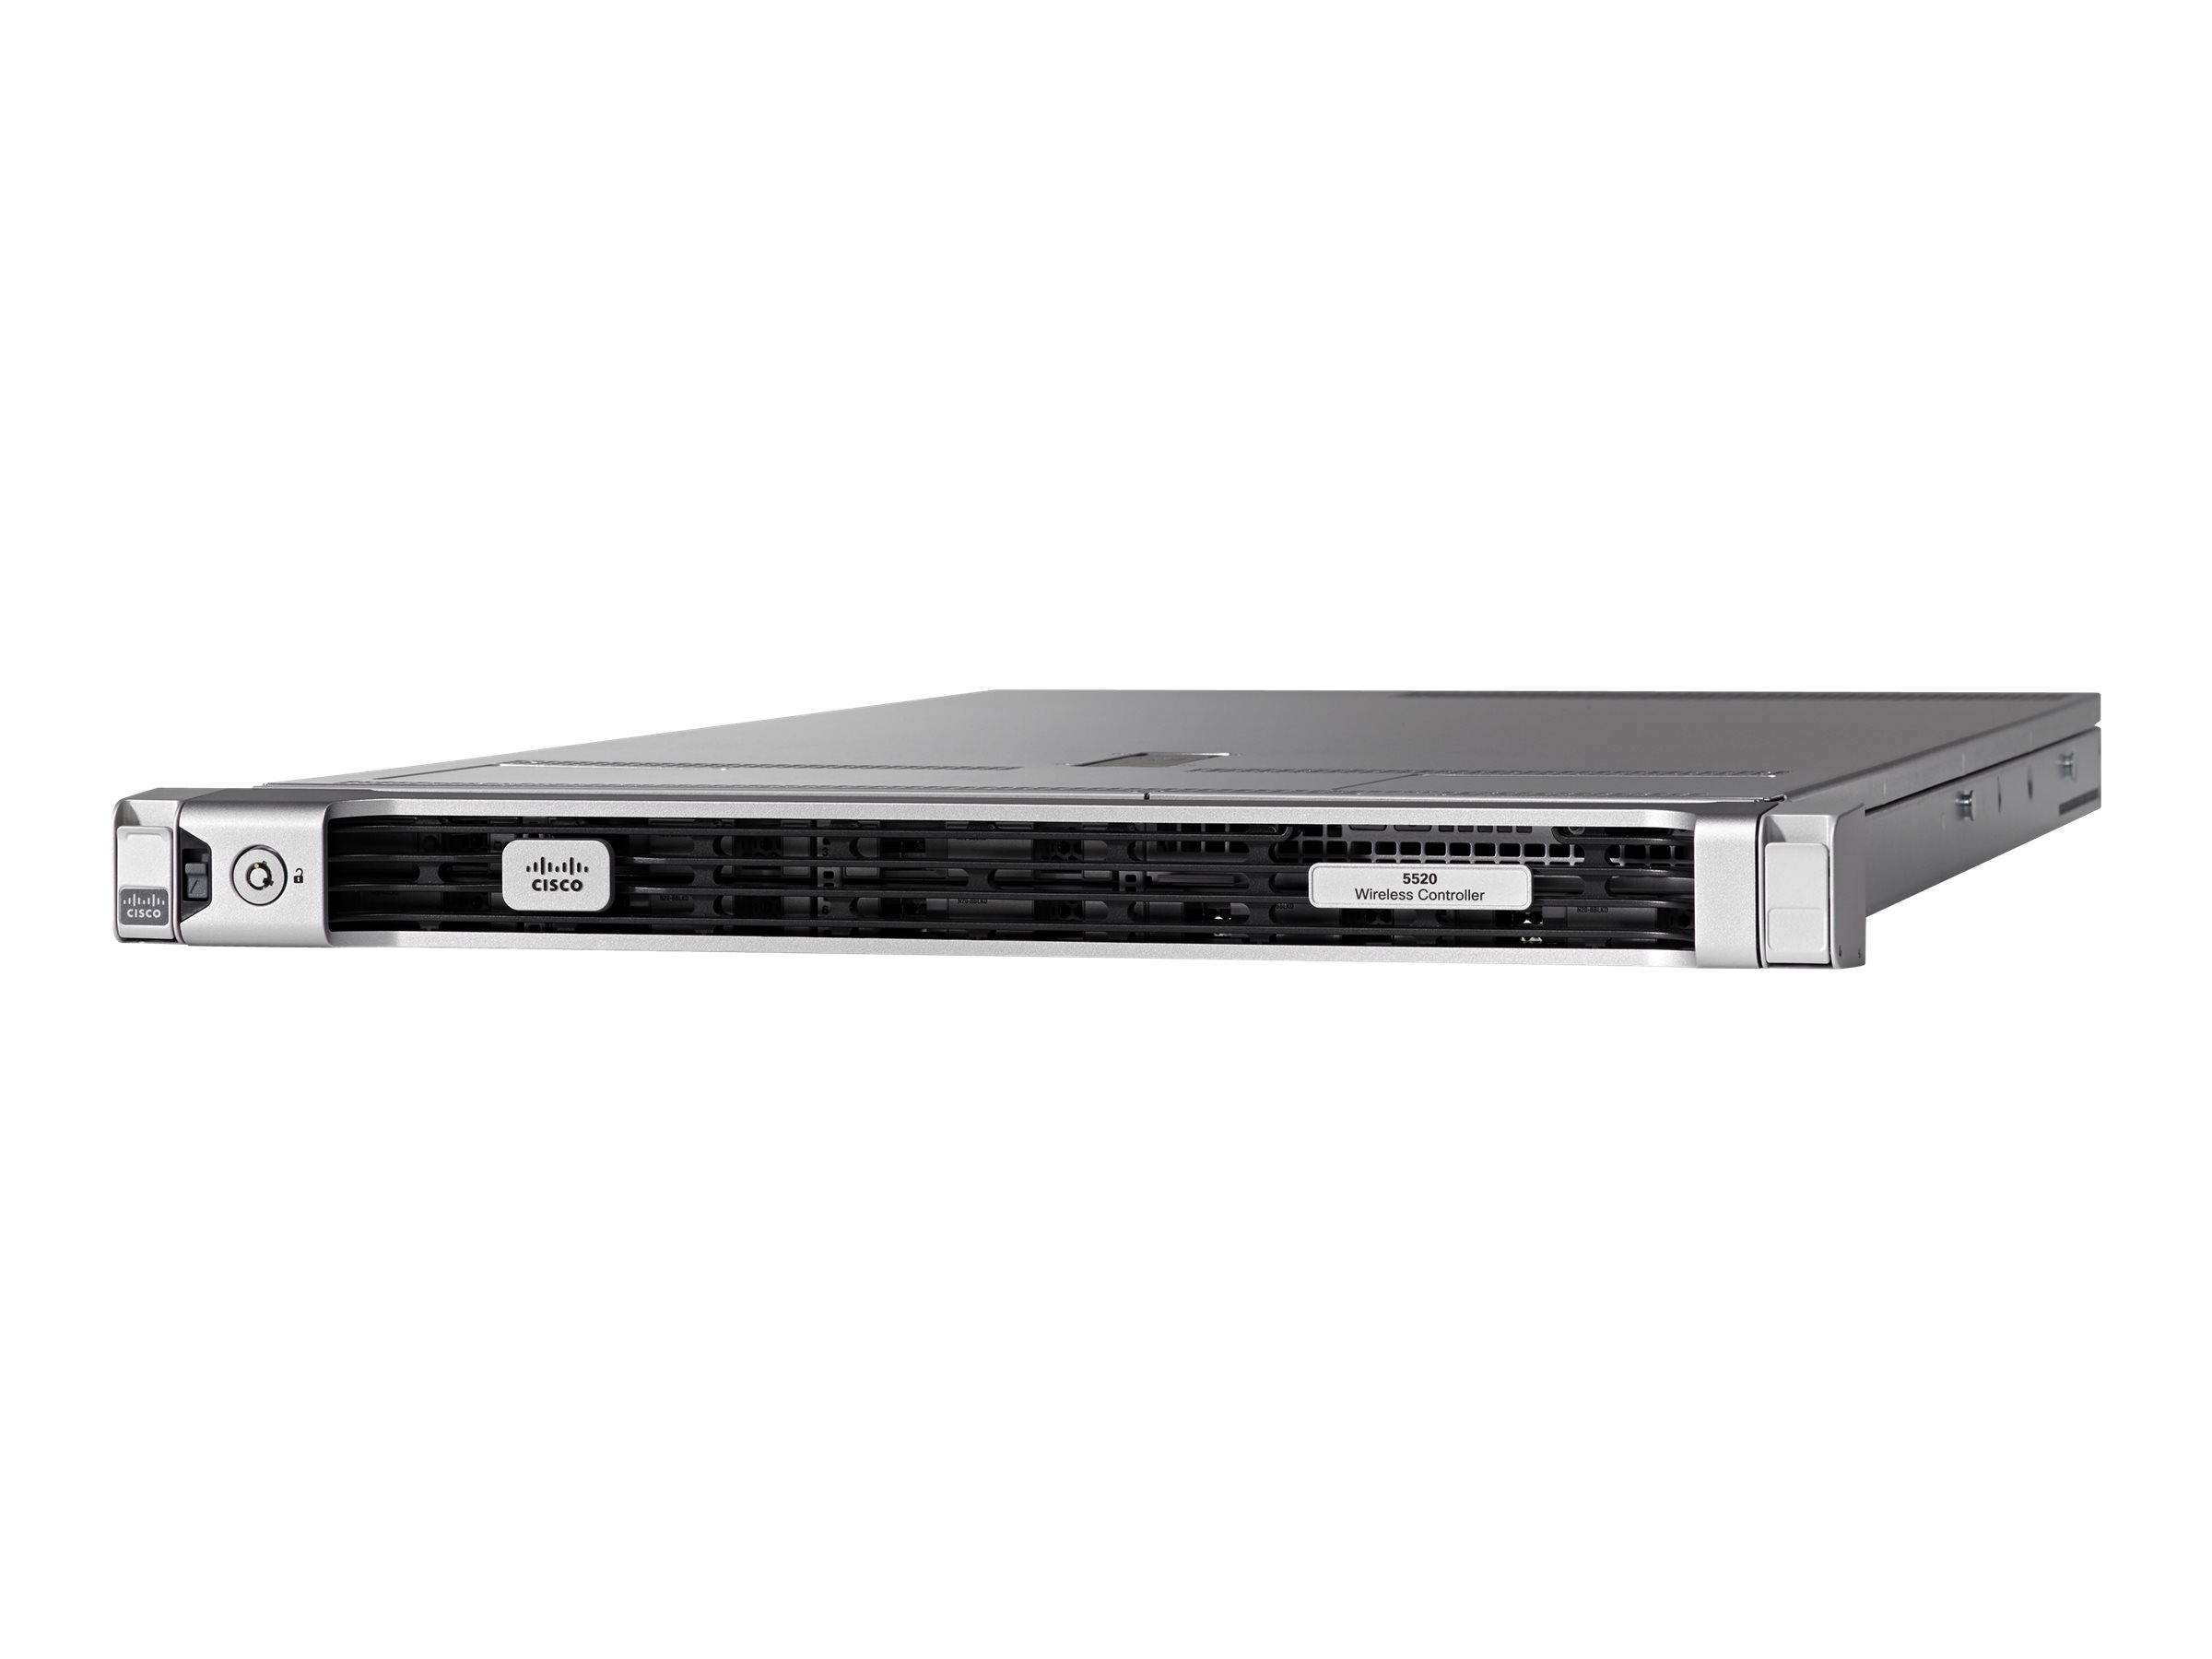 Cisco 5520 Wireless Controller - Périphérique d'administration réseau - 10GbE - 1U - rack-montable - AIR-CT5520-K9 - Points d'accès sans fil